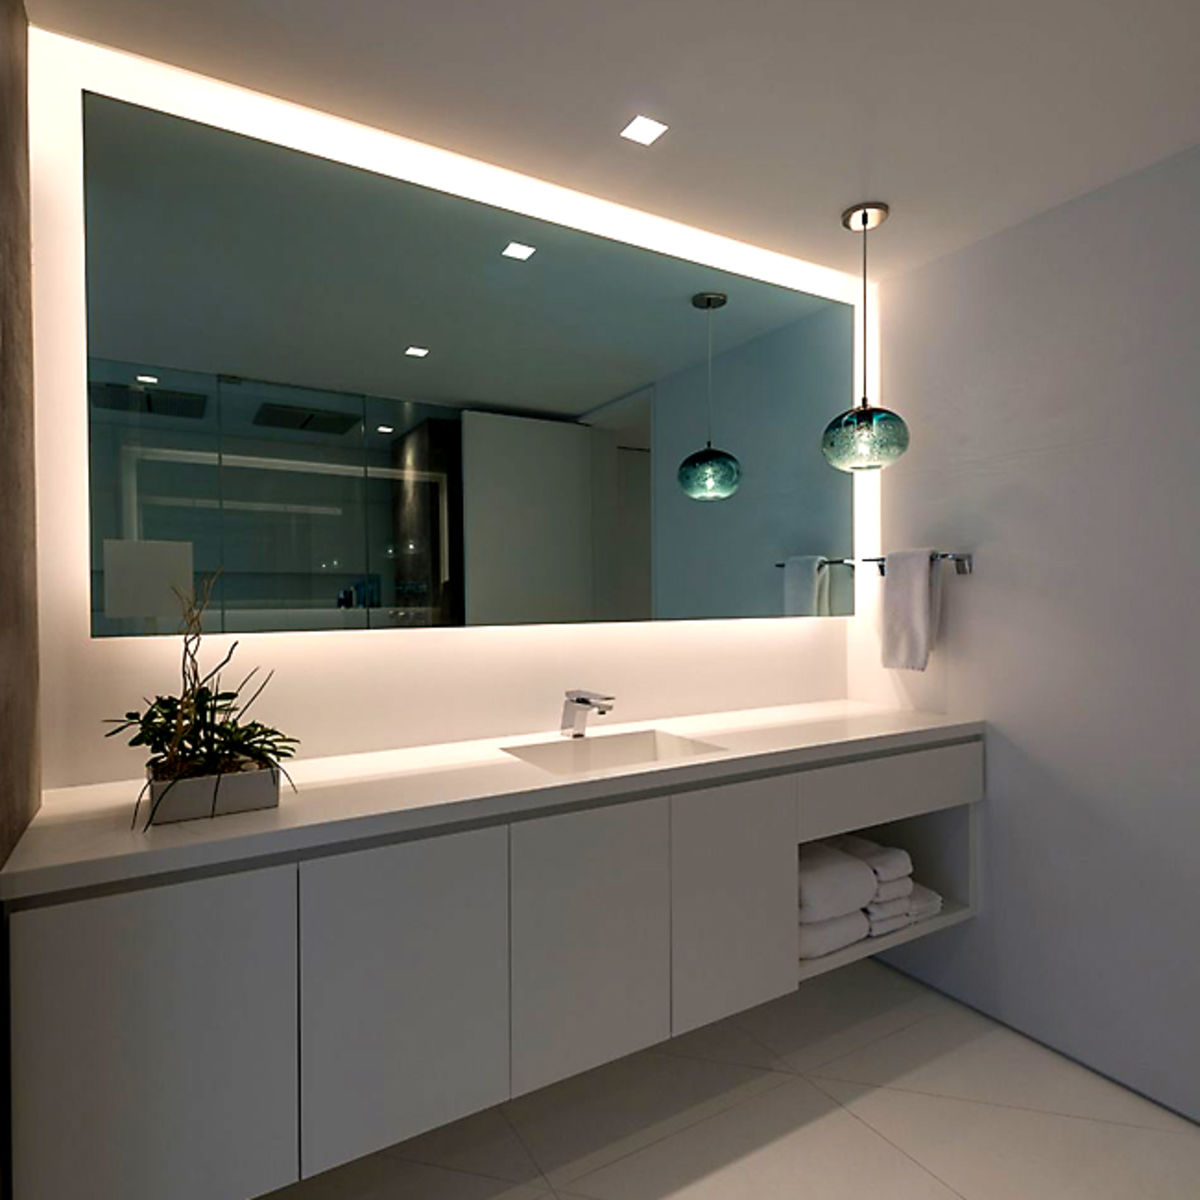 Светодиодные лампы в ванную. Освещение в ванной. Современное освещение в ванной. Потолочное освещение в ванной комнате. Зеркало в интерьере ванной.